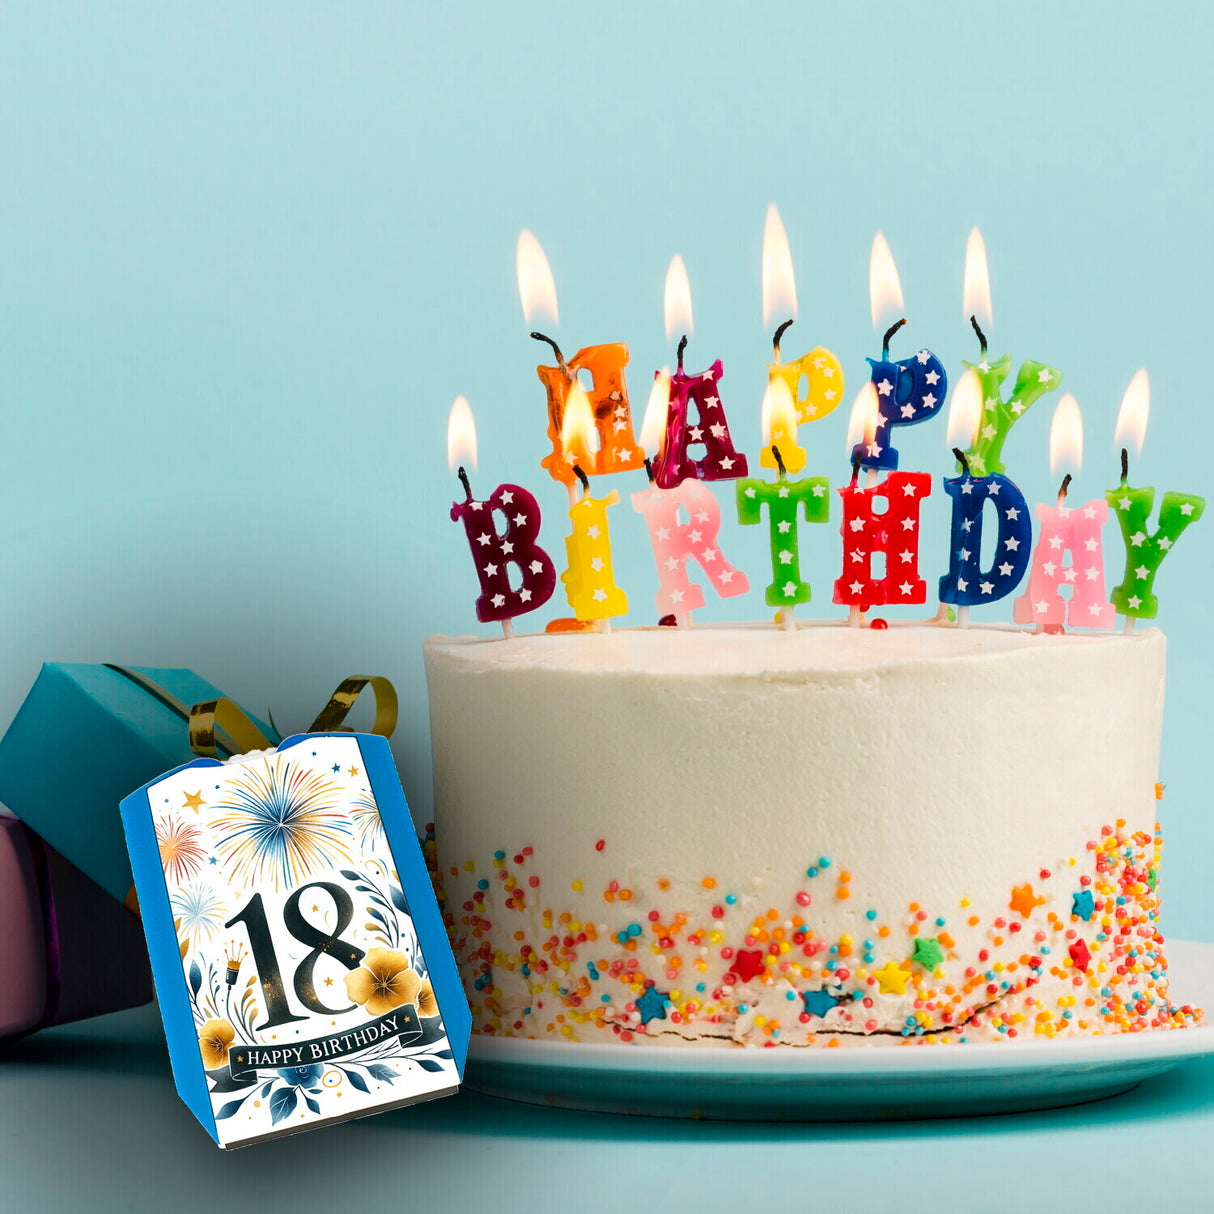 18. Geburtstag Parkscheibe mit Spruch Happy Birthday 18